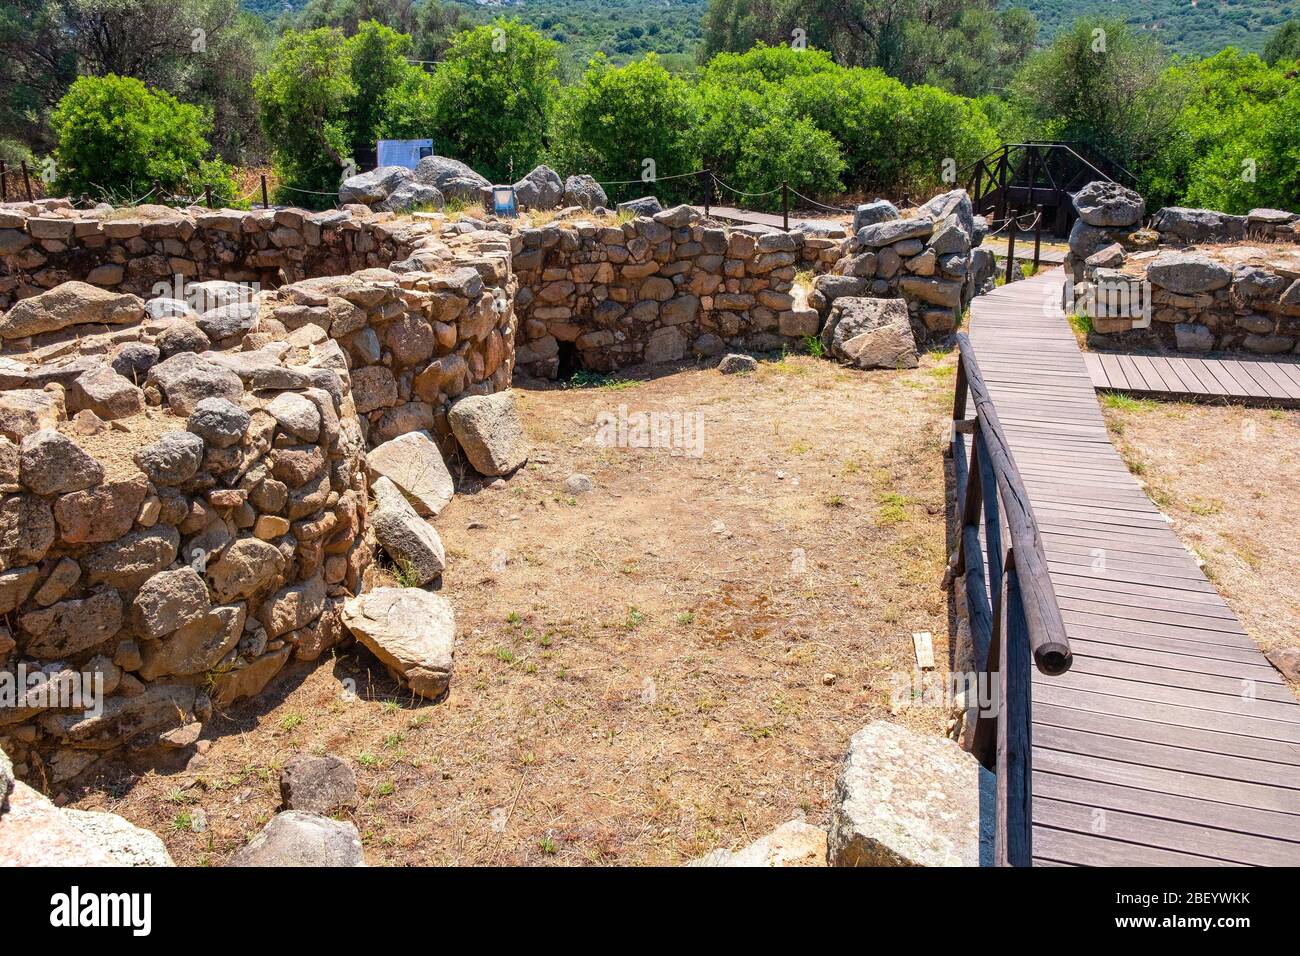 Arzachena, Sardinien / Italien - 2019/07/19: Archäologische Ruinen des nuraghischen Komplexes La Prisgiona - Nuraghe La Prisgiona - mit Reste von abgerundeten Steinen Stockfoto